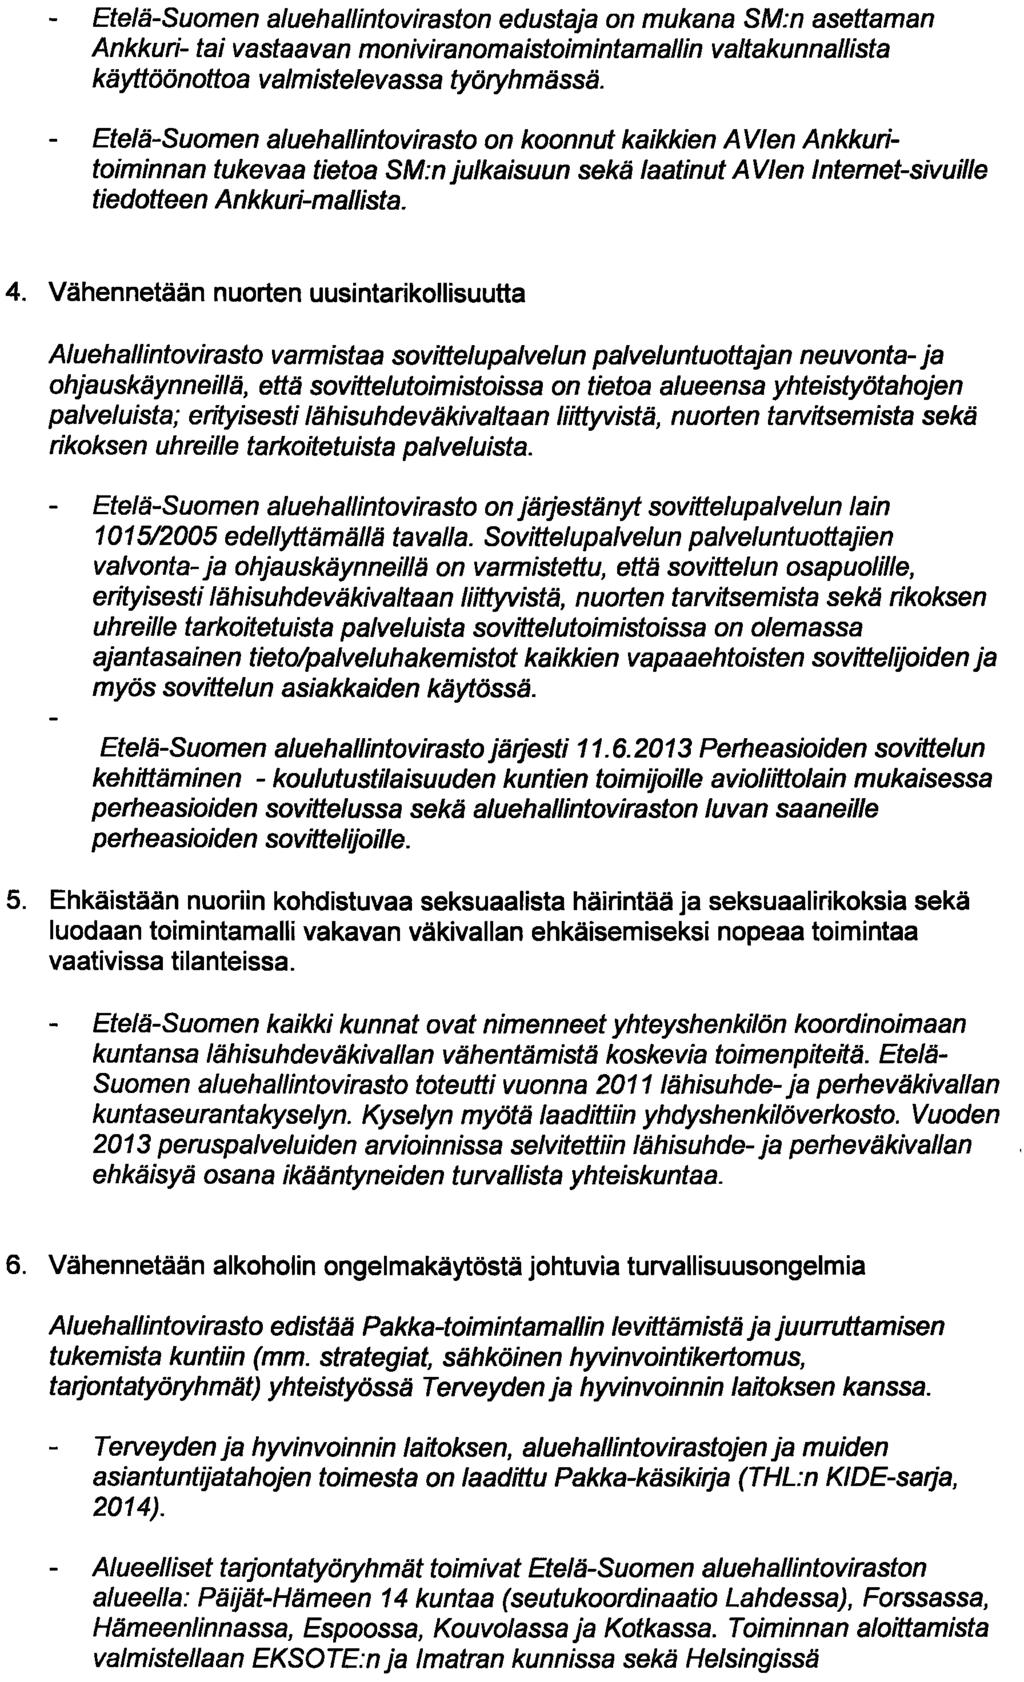 Etelä-Suomen aluehallintoviraston edustaja on mukana SM:n asettaman Ankkuri- tai vastaavan moniviranomaistoimintamallin valtakunnallista käyttöönottoa valmistelevassa työryhmässä.